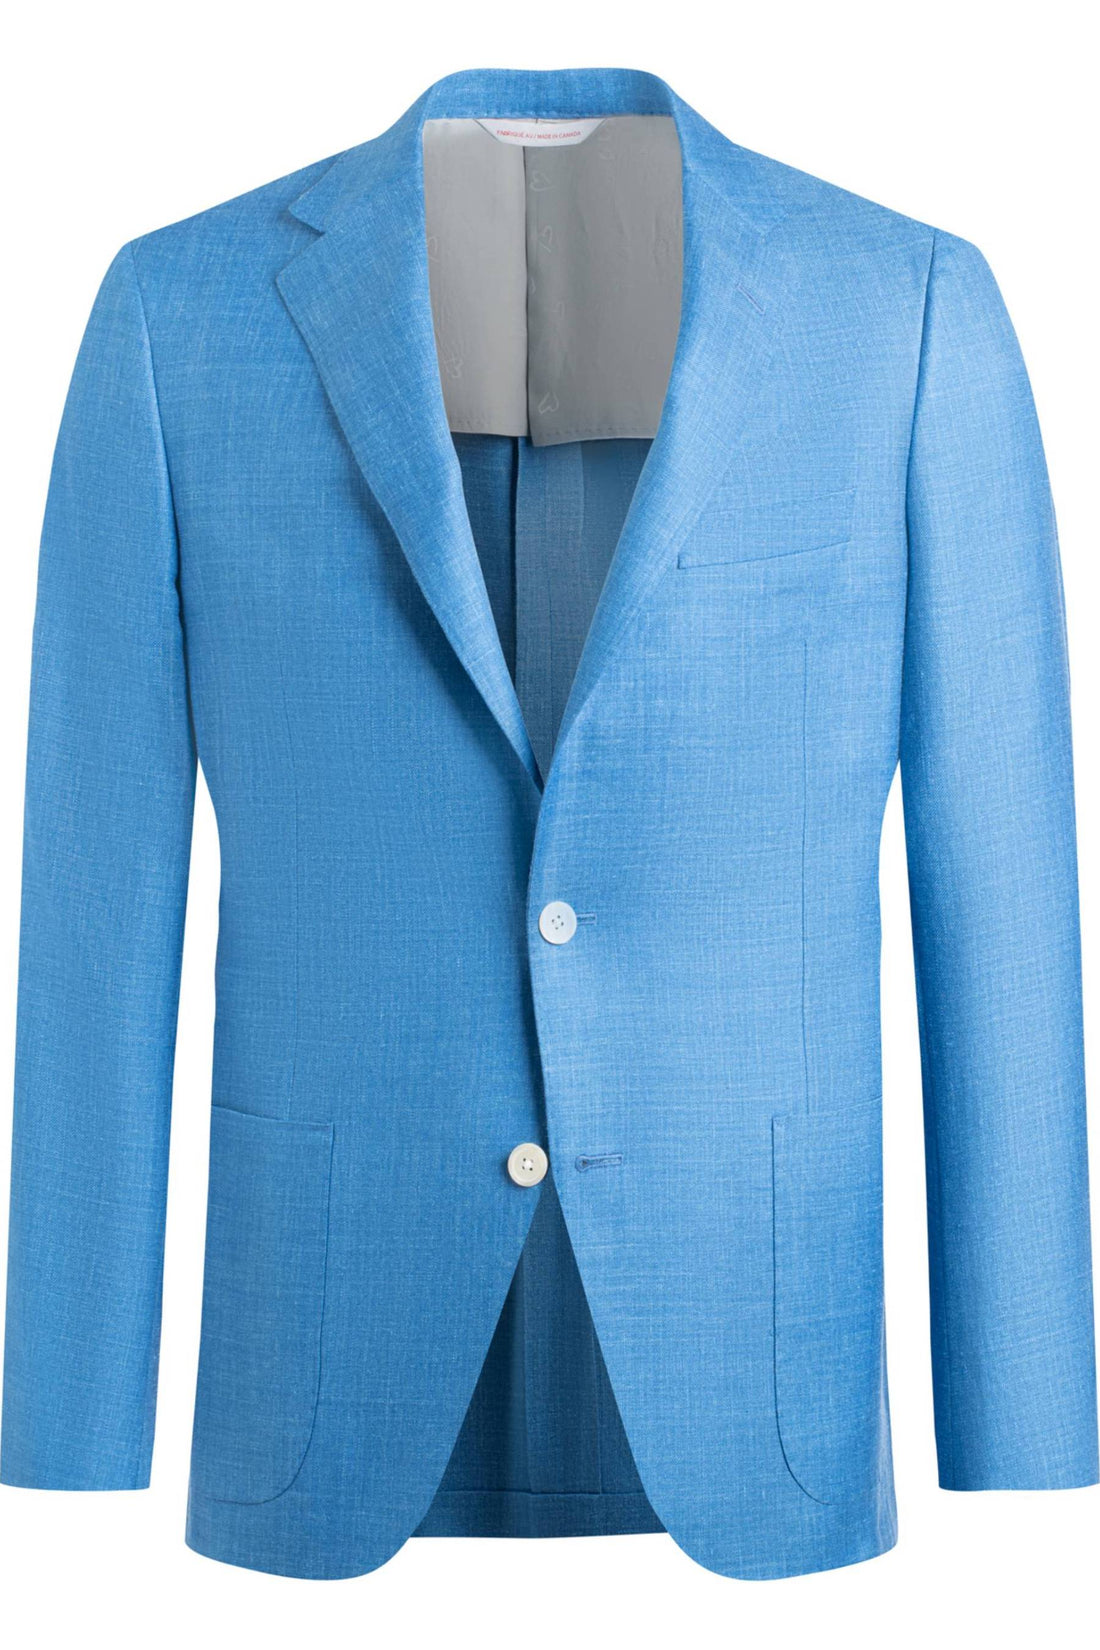 Samuelsohn Blue Wool Silk Linen Soft Jacket 